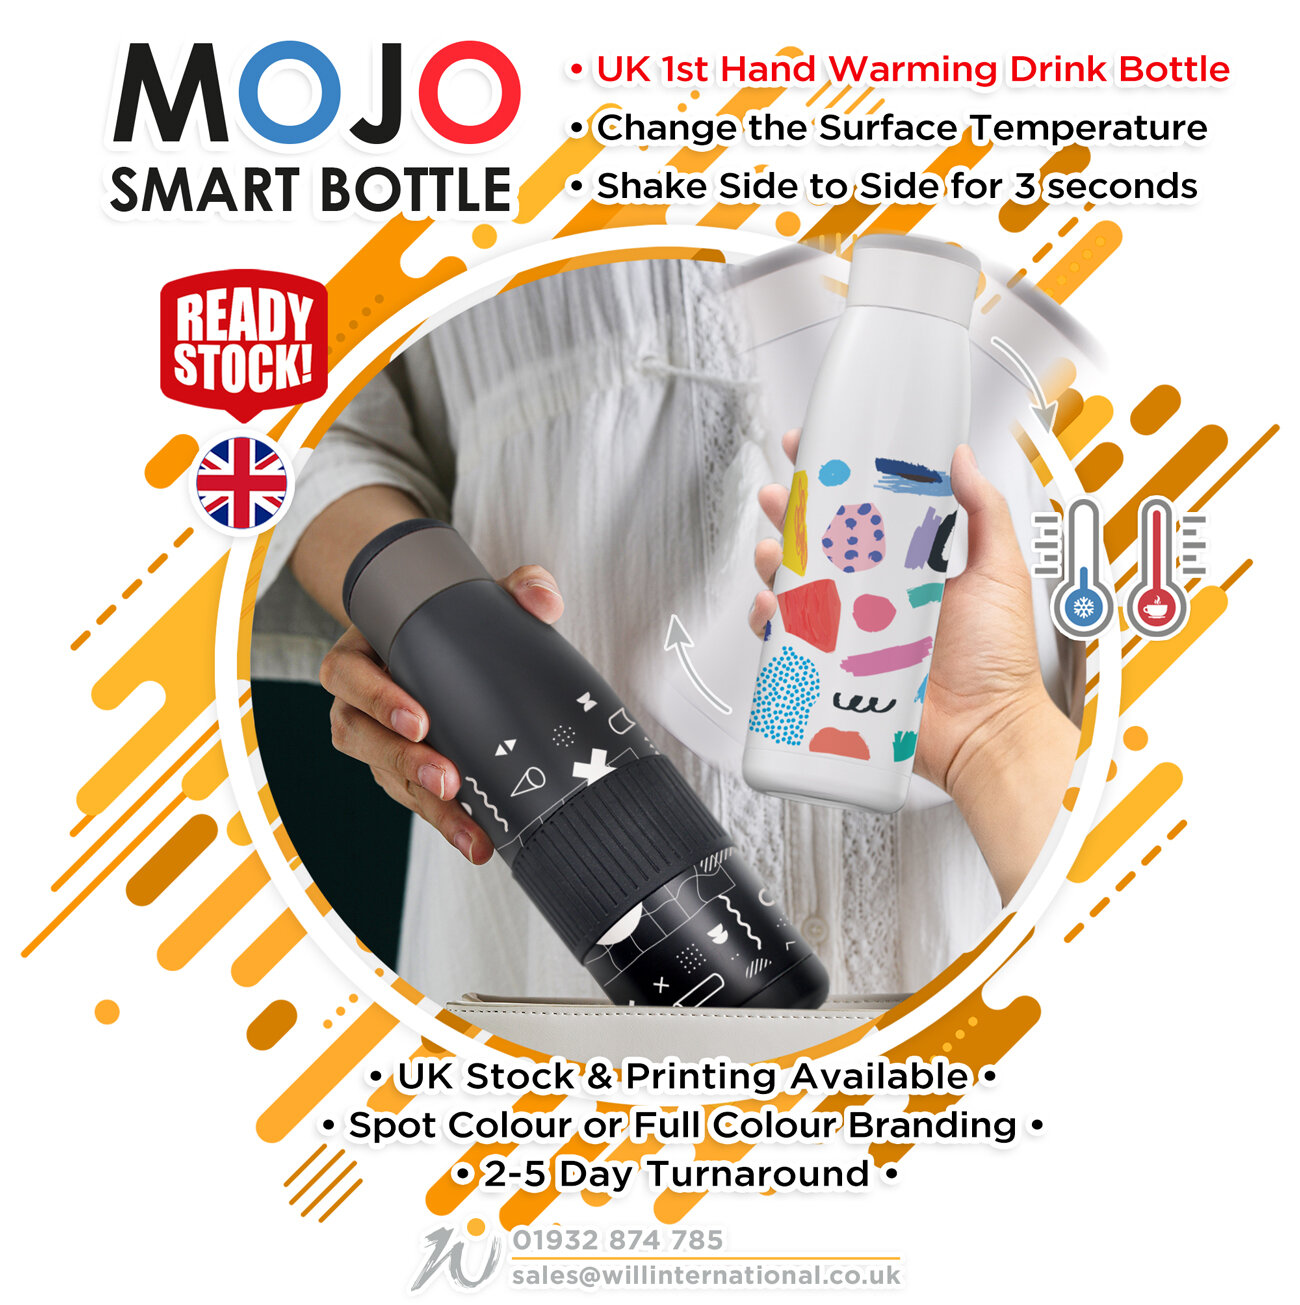 MOJO-Bottle-Emailer.jpg